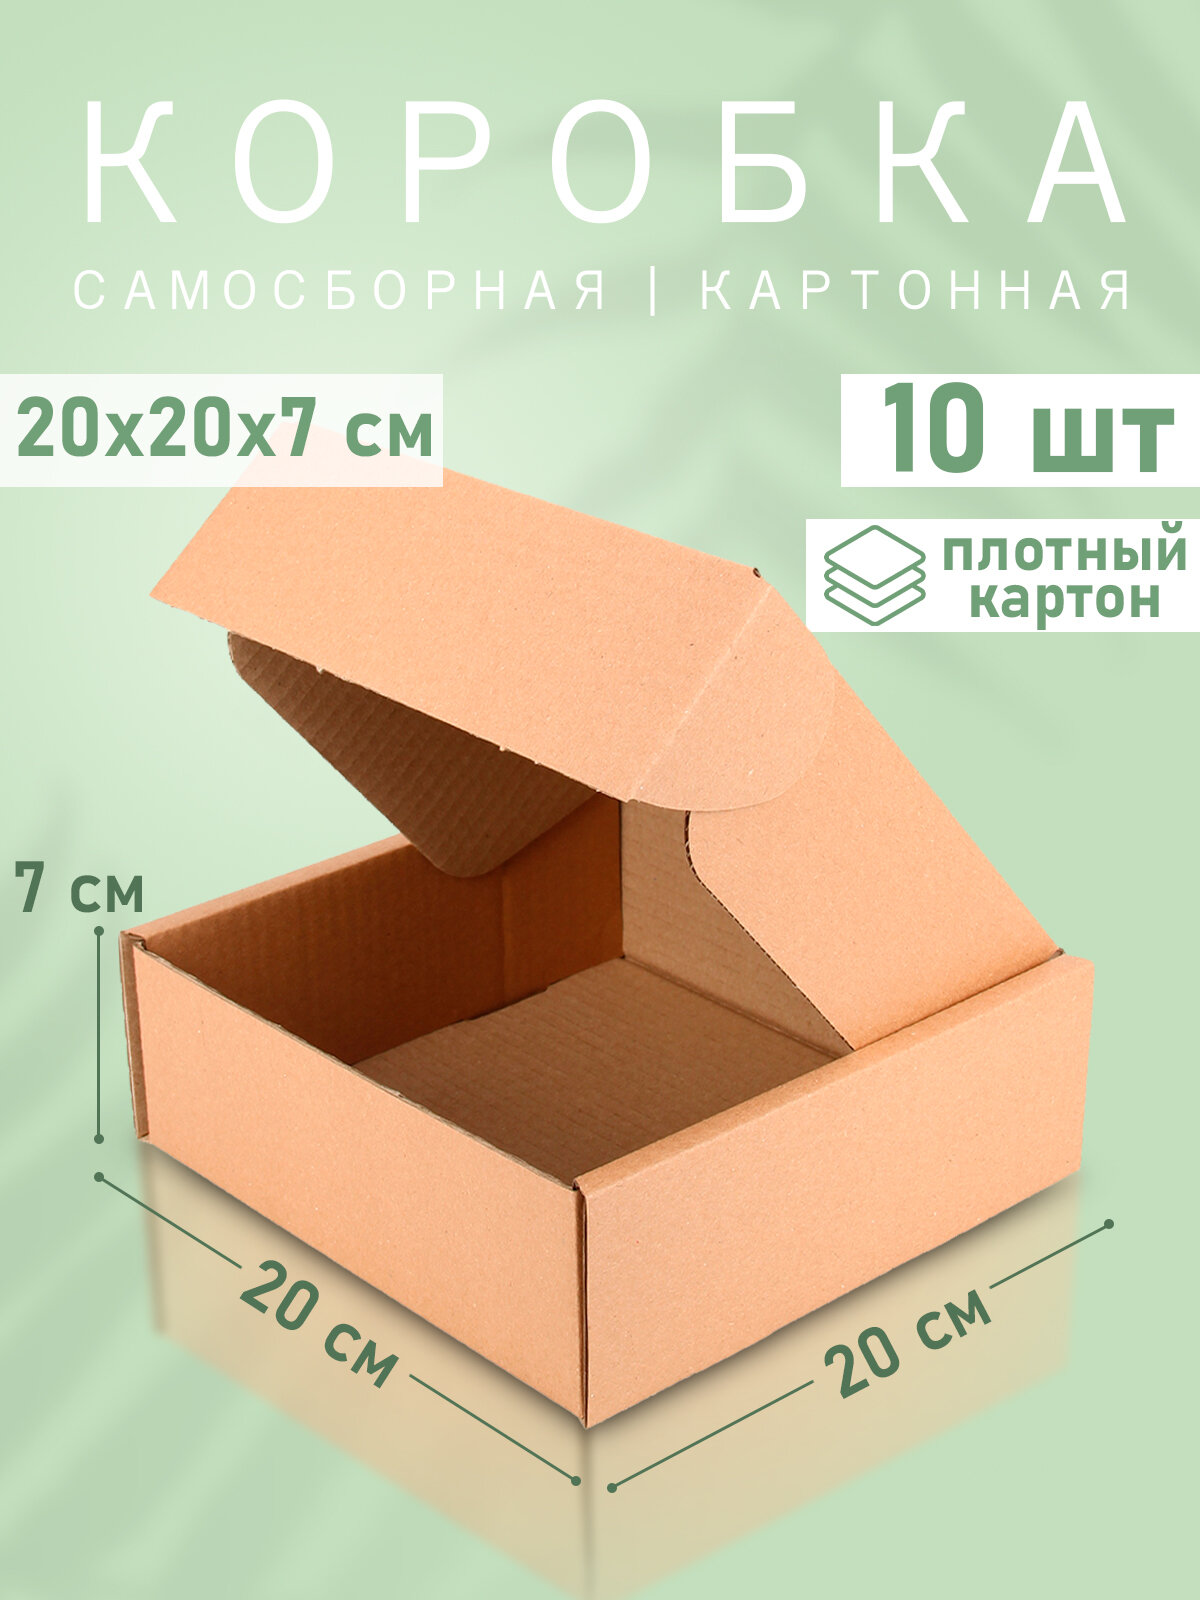 Самосборная картонная коробка 20*20 см - 10 штук